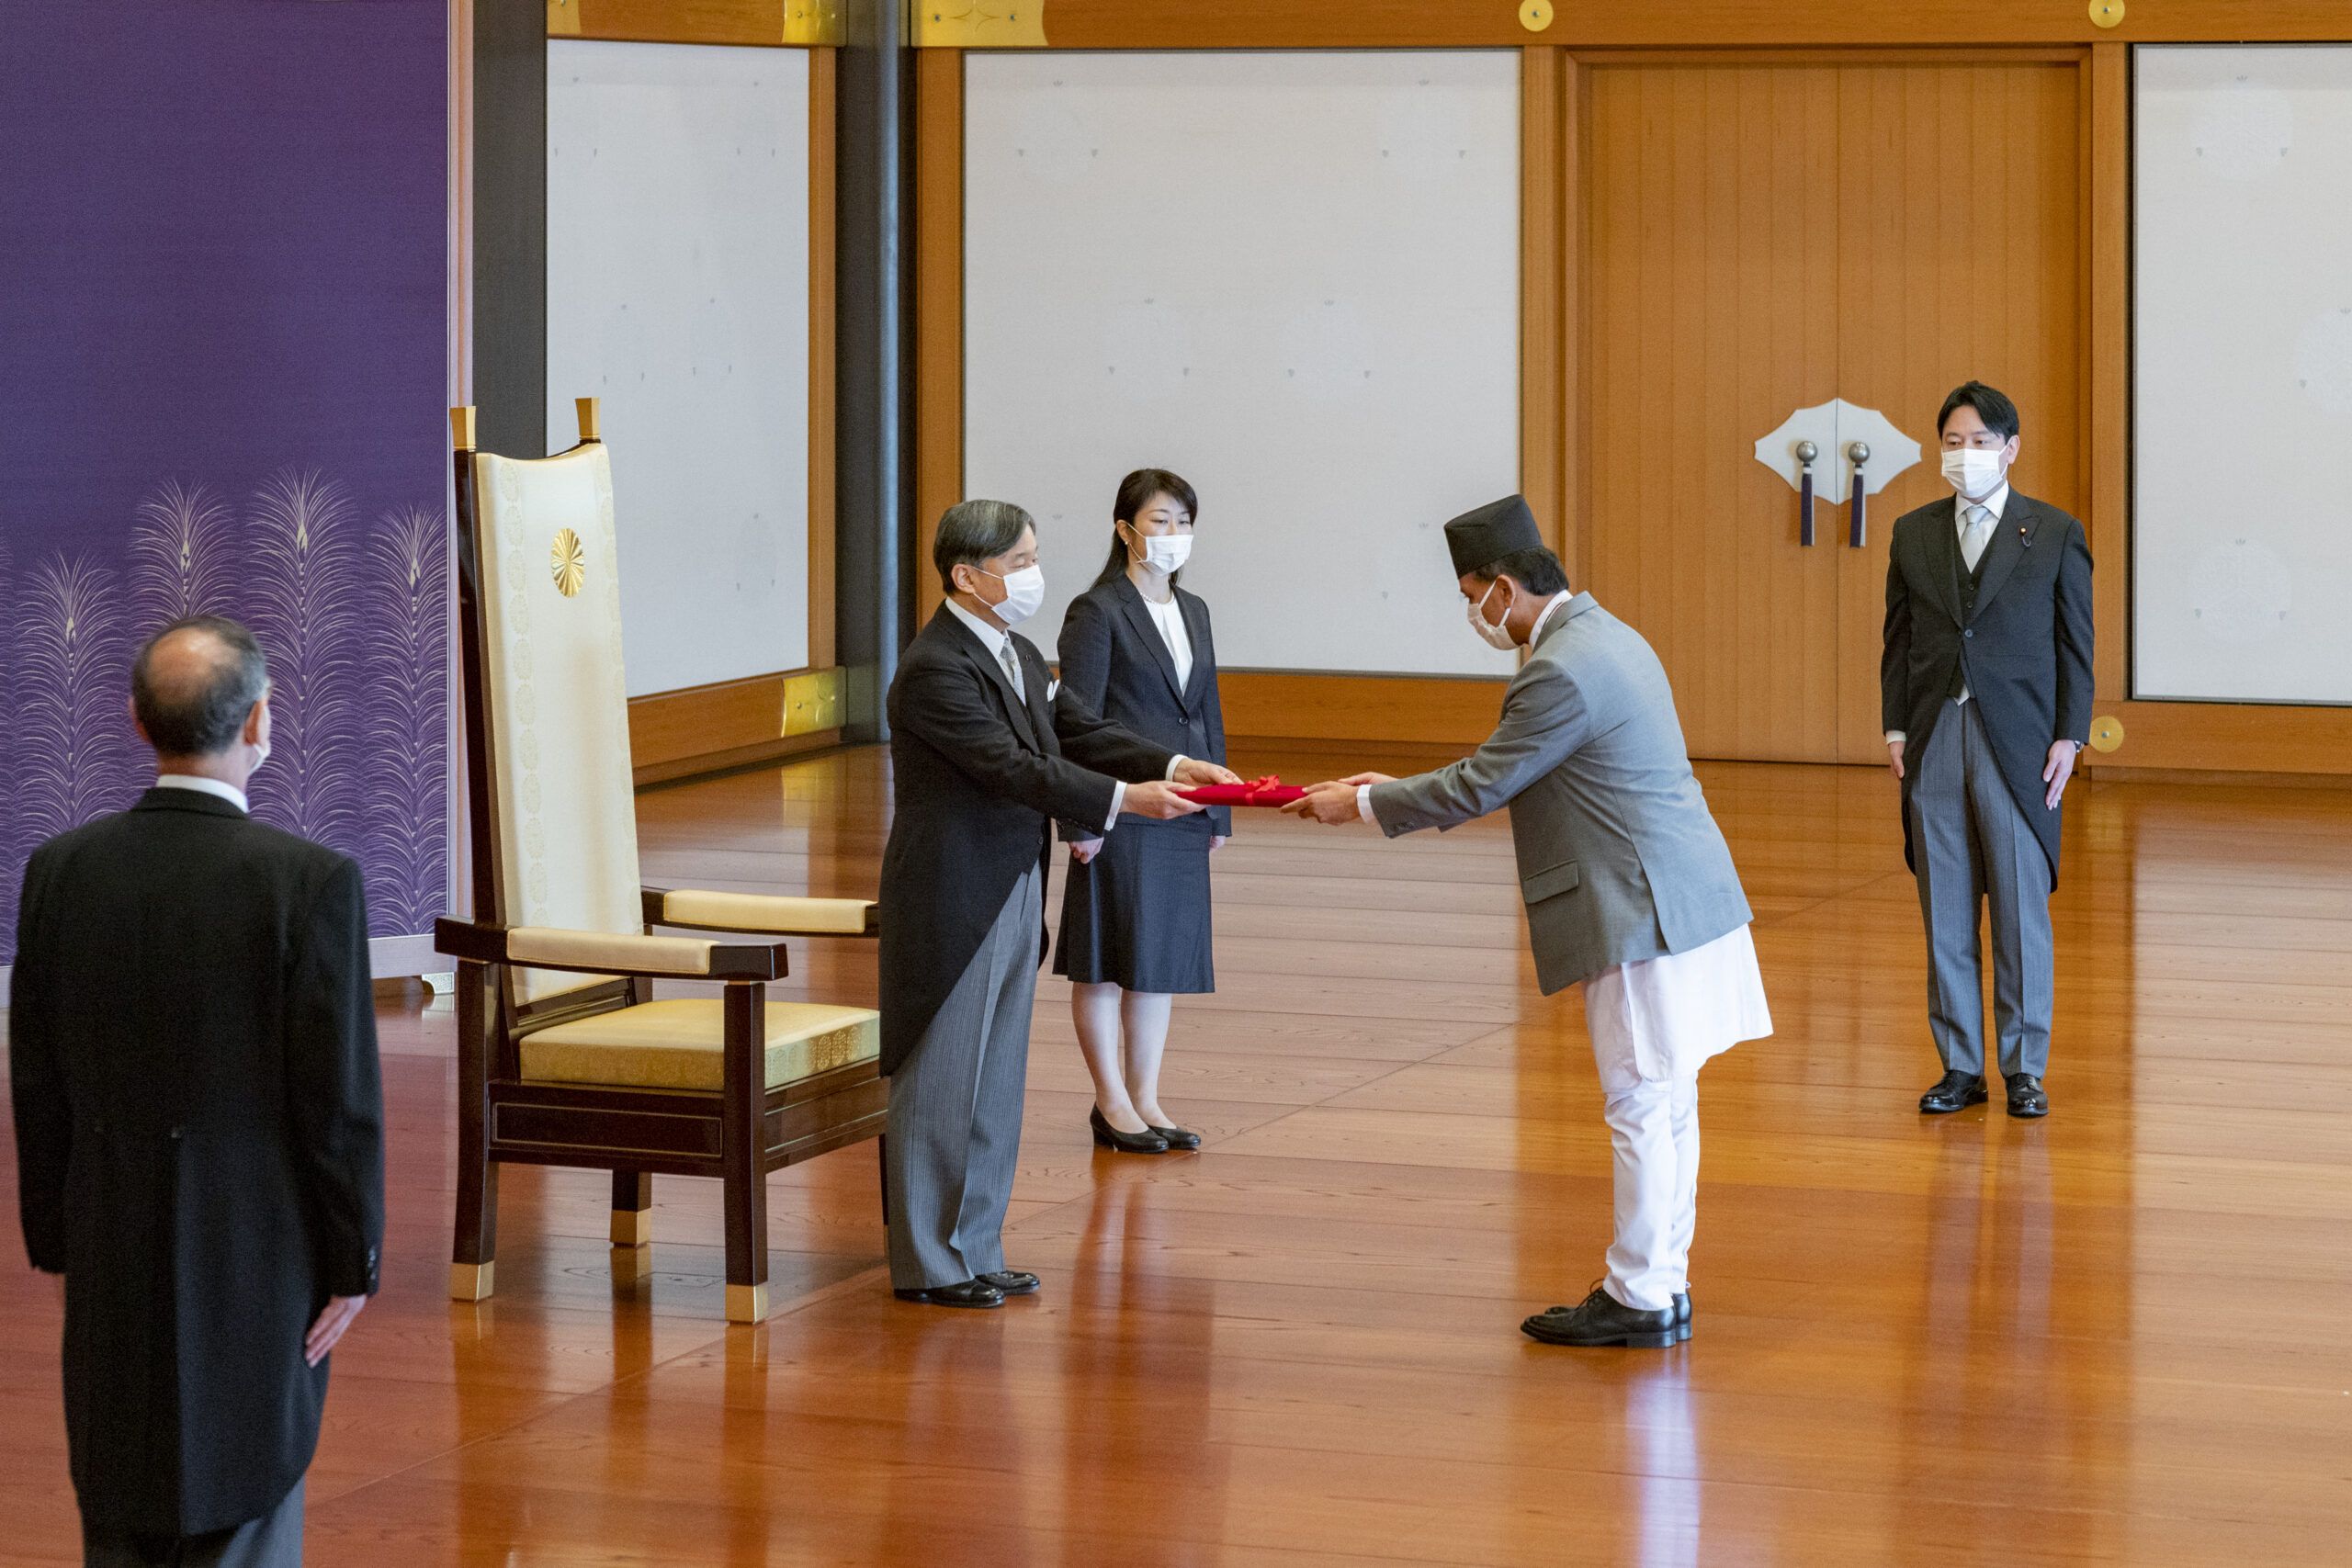 जापानका लागि नेपालका राजदूत डा सुवेदीद्वारा ओहोदाको प्रमाणपत्र प्रस्तुत